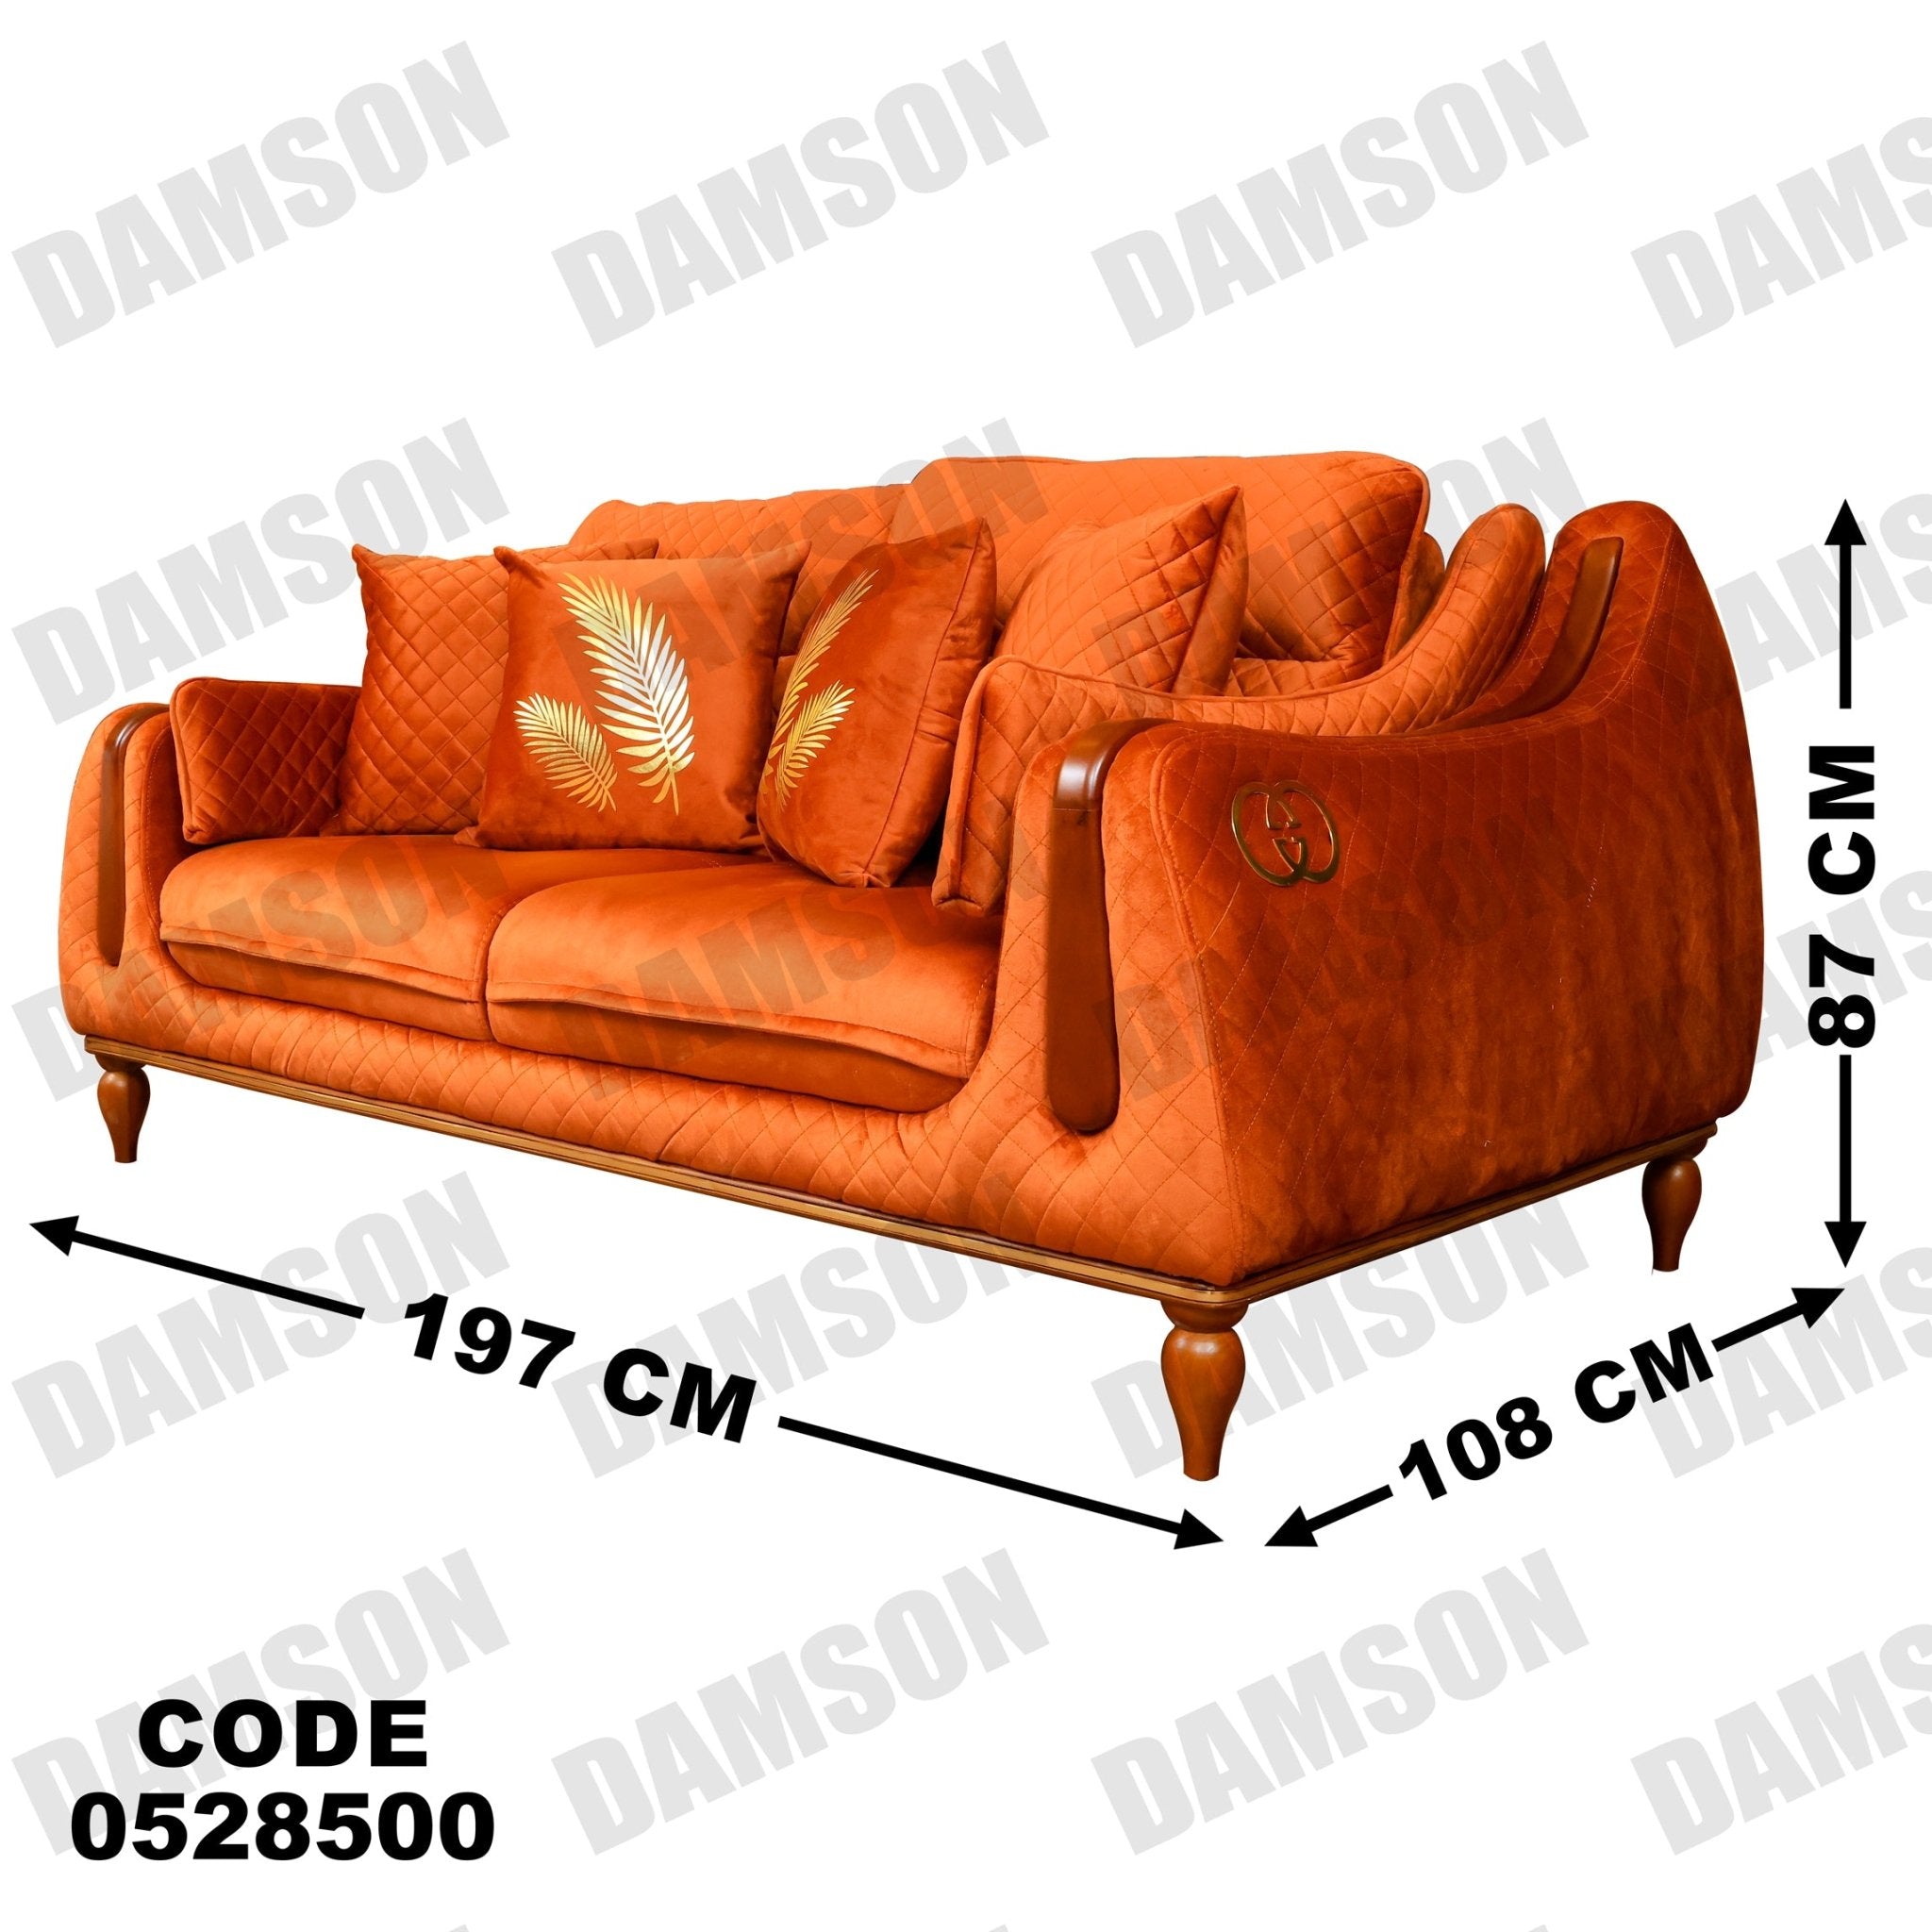 انترية 285 - Damson Furnitureانترية 285